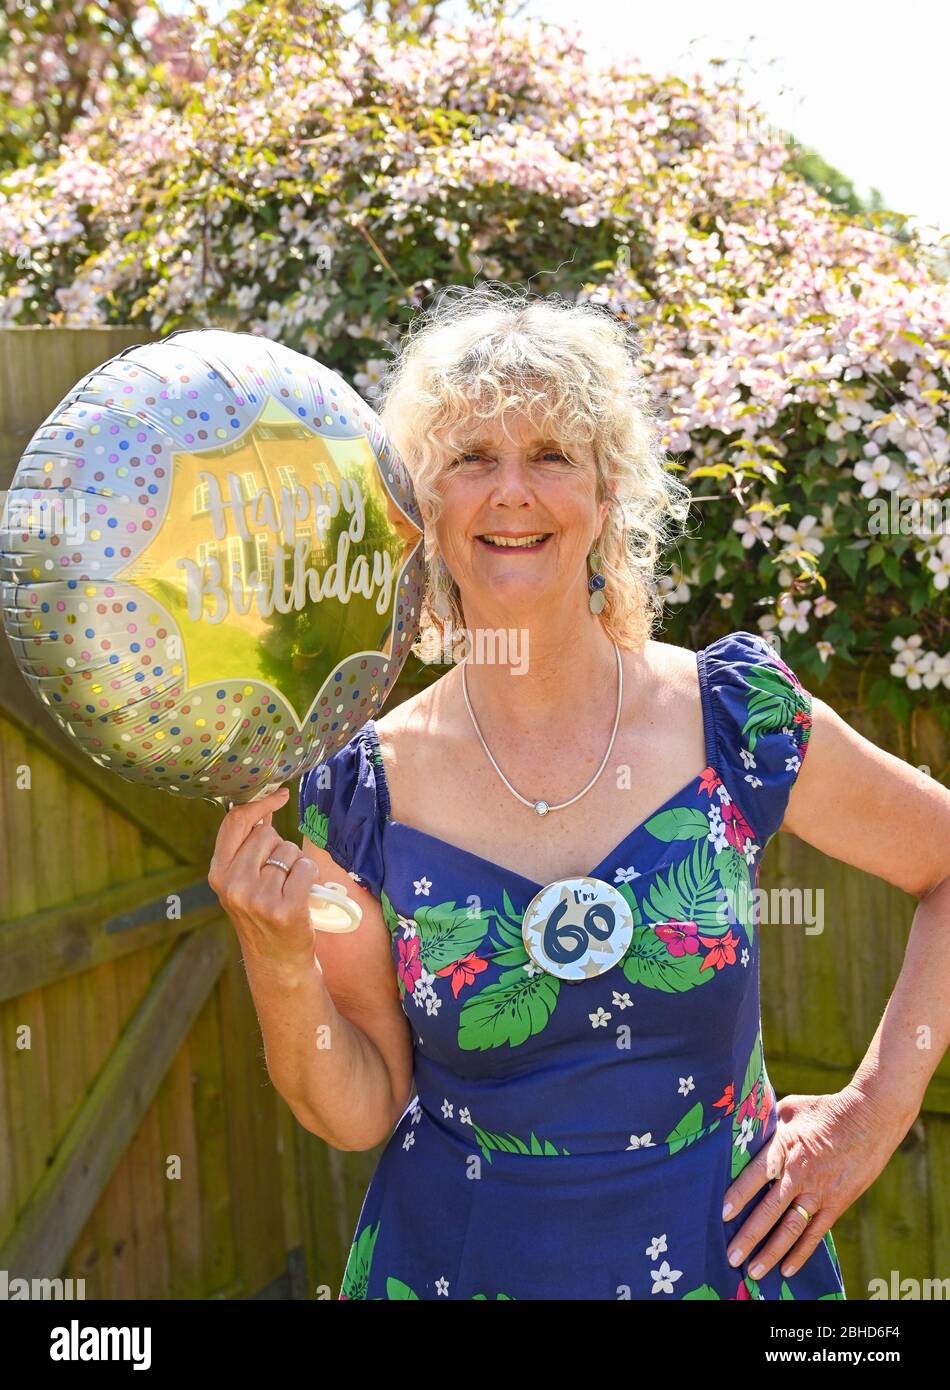 Mujer celebrando su 60 cumpleaños en casa durante el cierre del Reino Unido en la pandemia de coronavirus COVID-19 Foto de stock